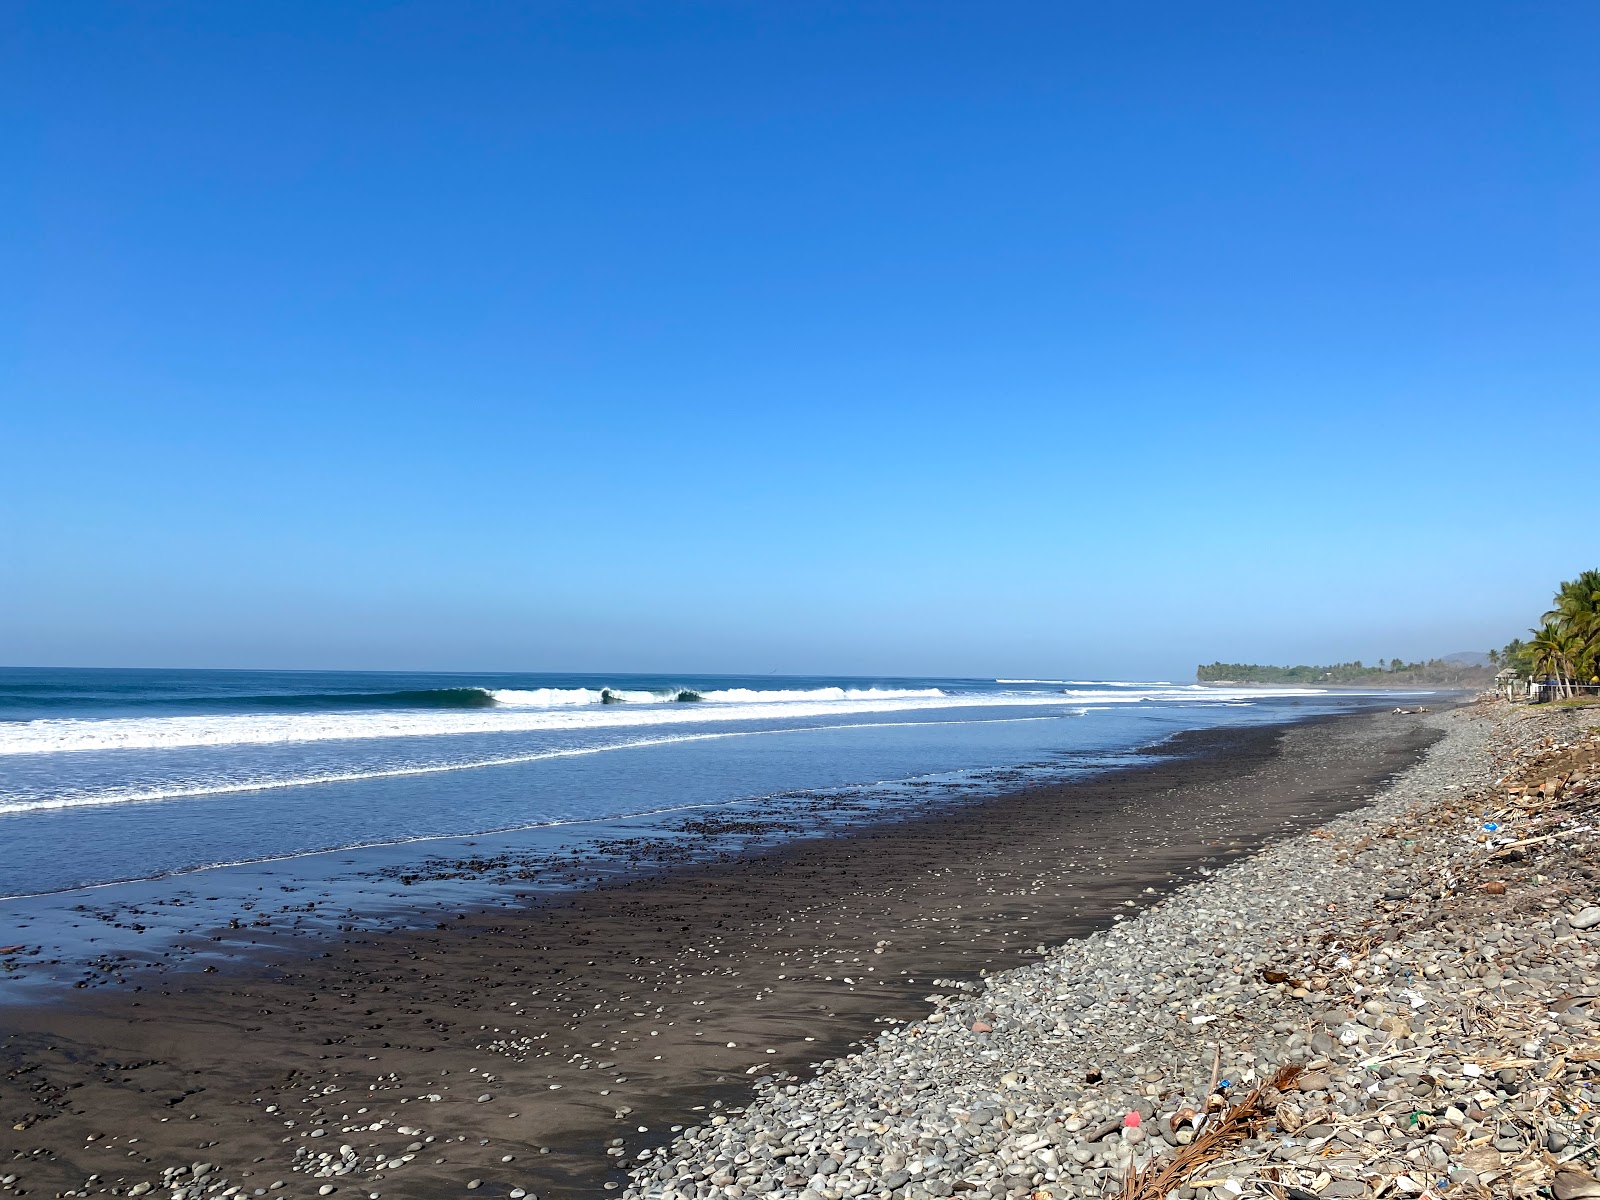 Foto de ASOB Conchalio beach com areia cinza e seixos superfície